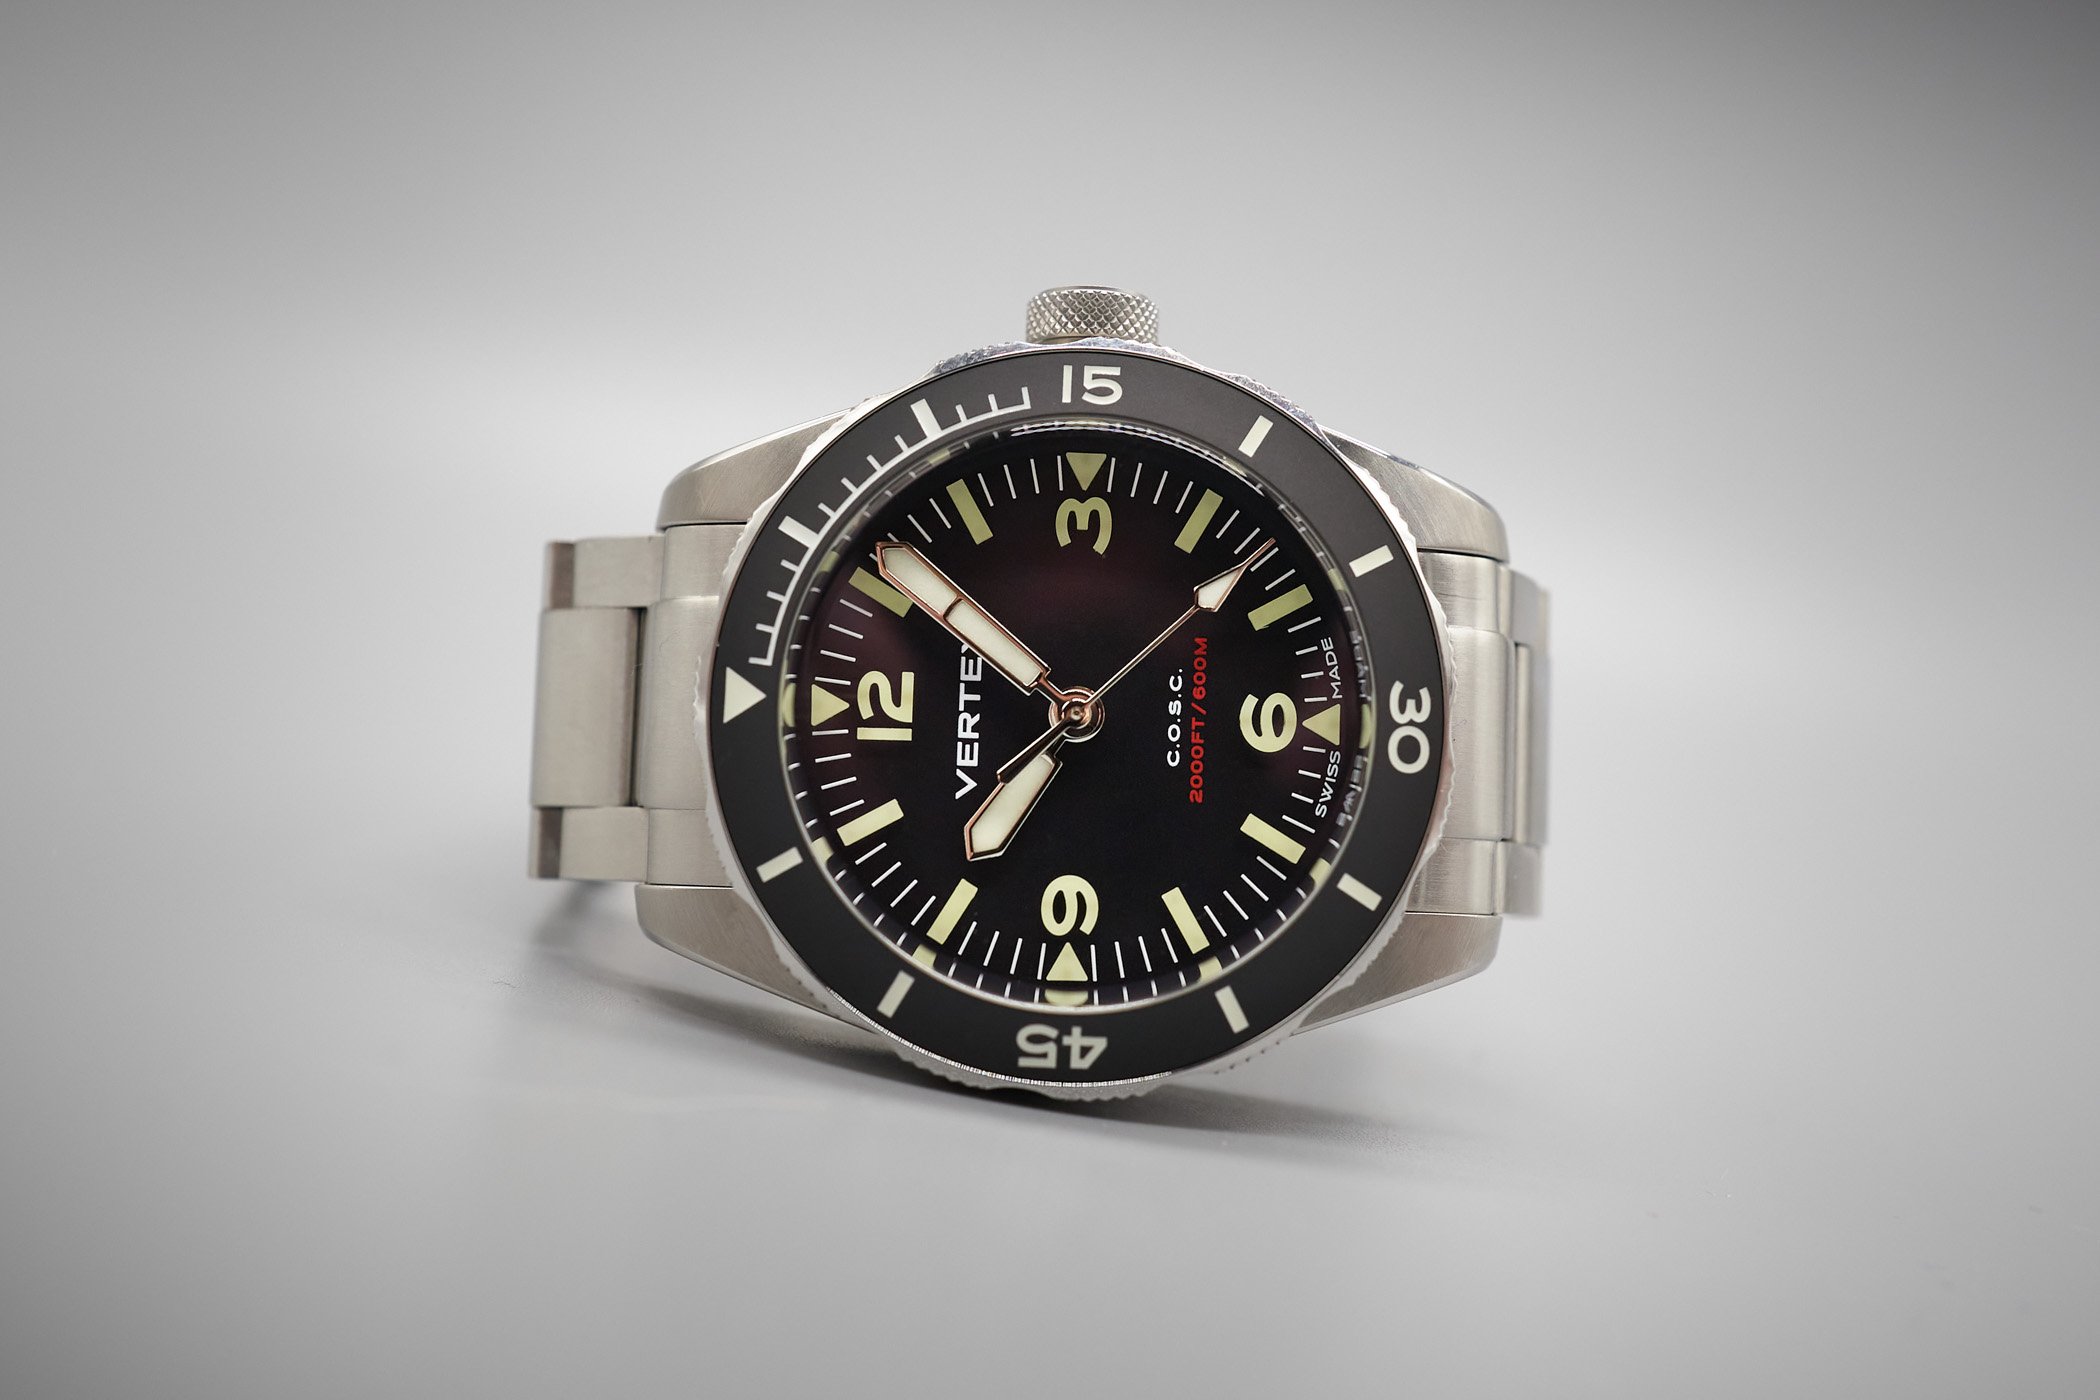 Vertex M60 Aqualion COSC Dive Watch Review